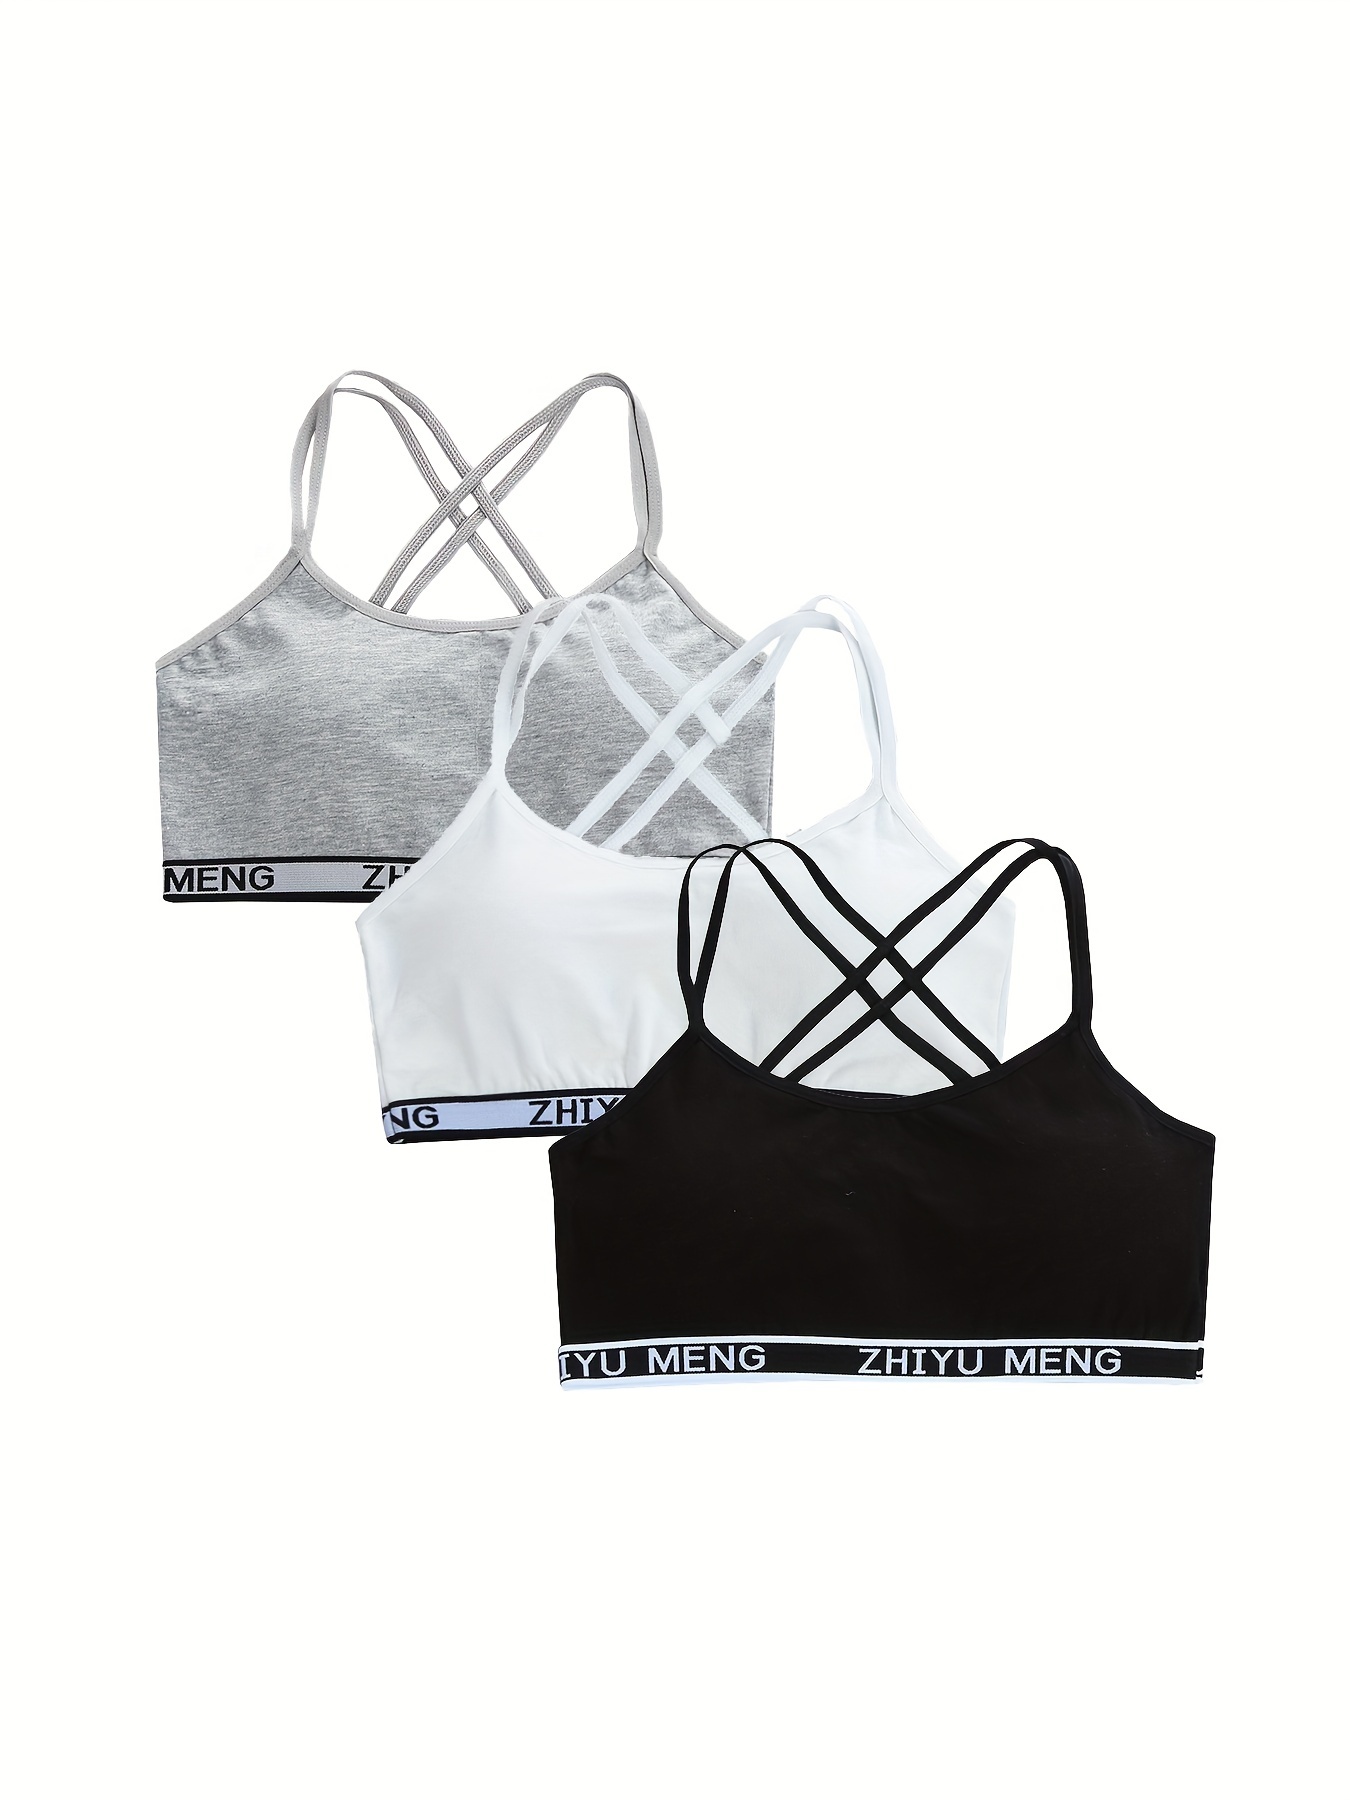 Girls Sports Bralette Camisole Set Cotton Training Bras 9 15 - Temu